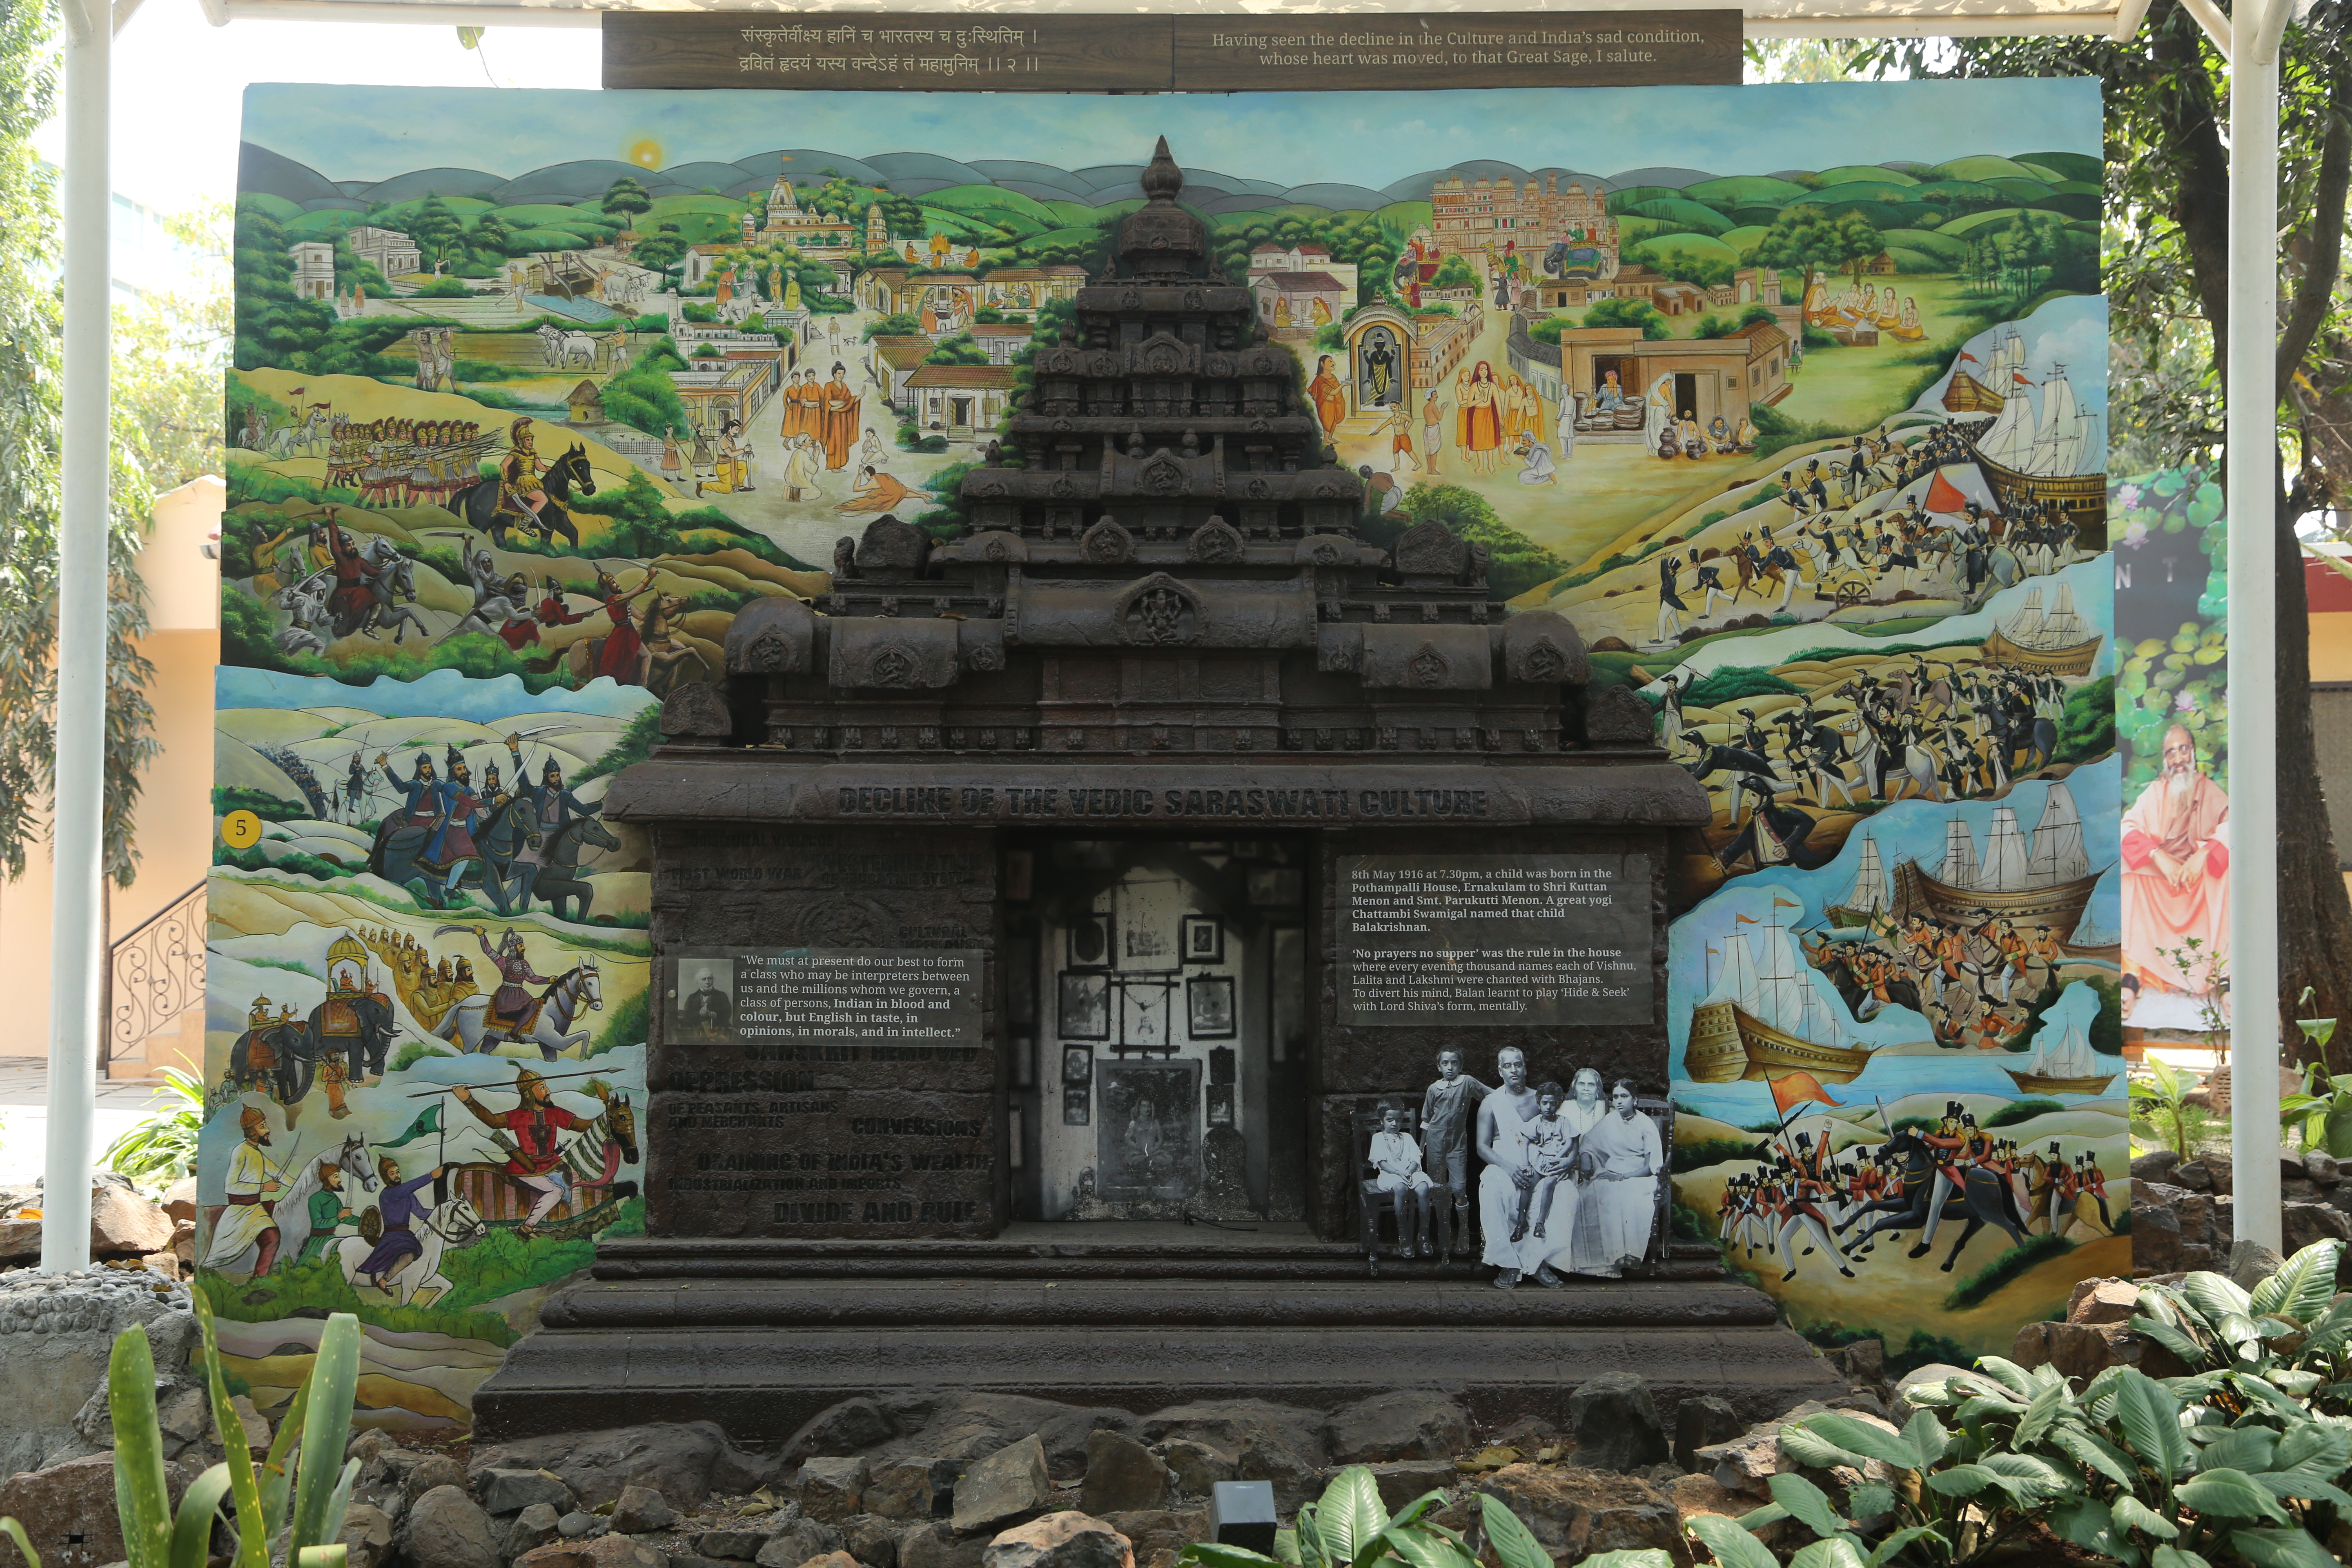 Decline of Vedic Sarasvati Culture